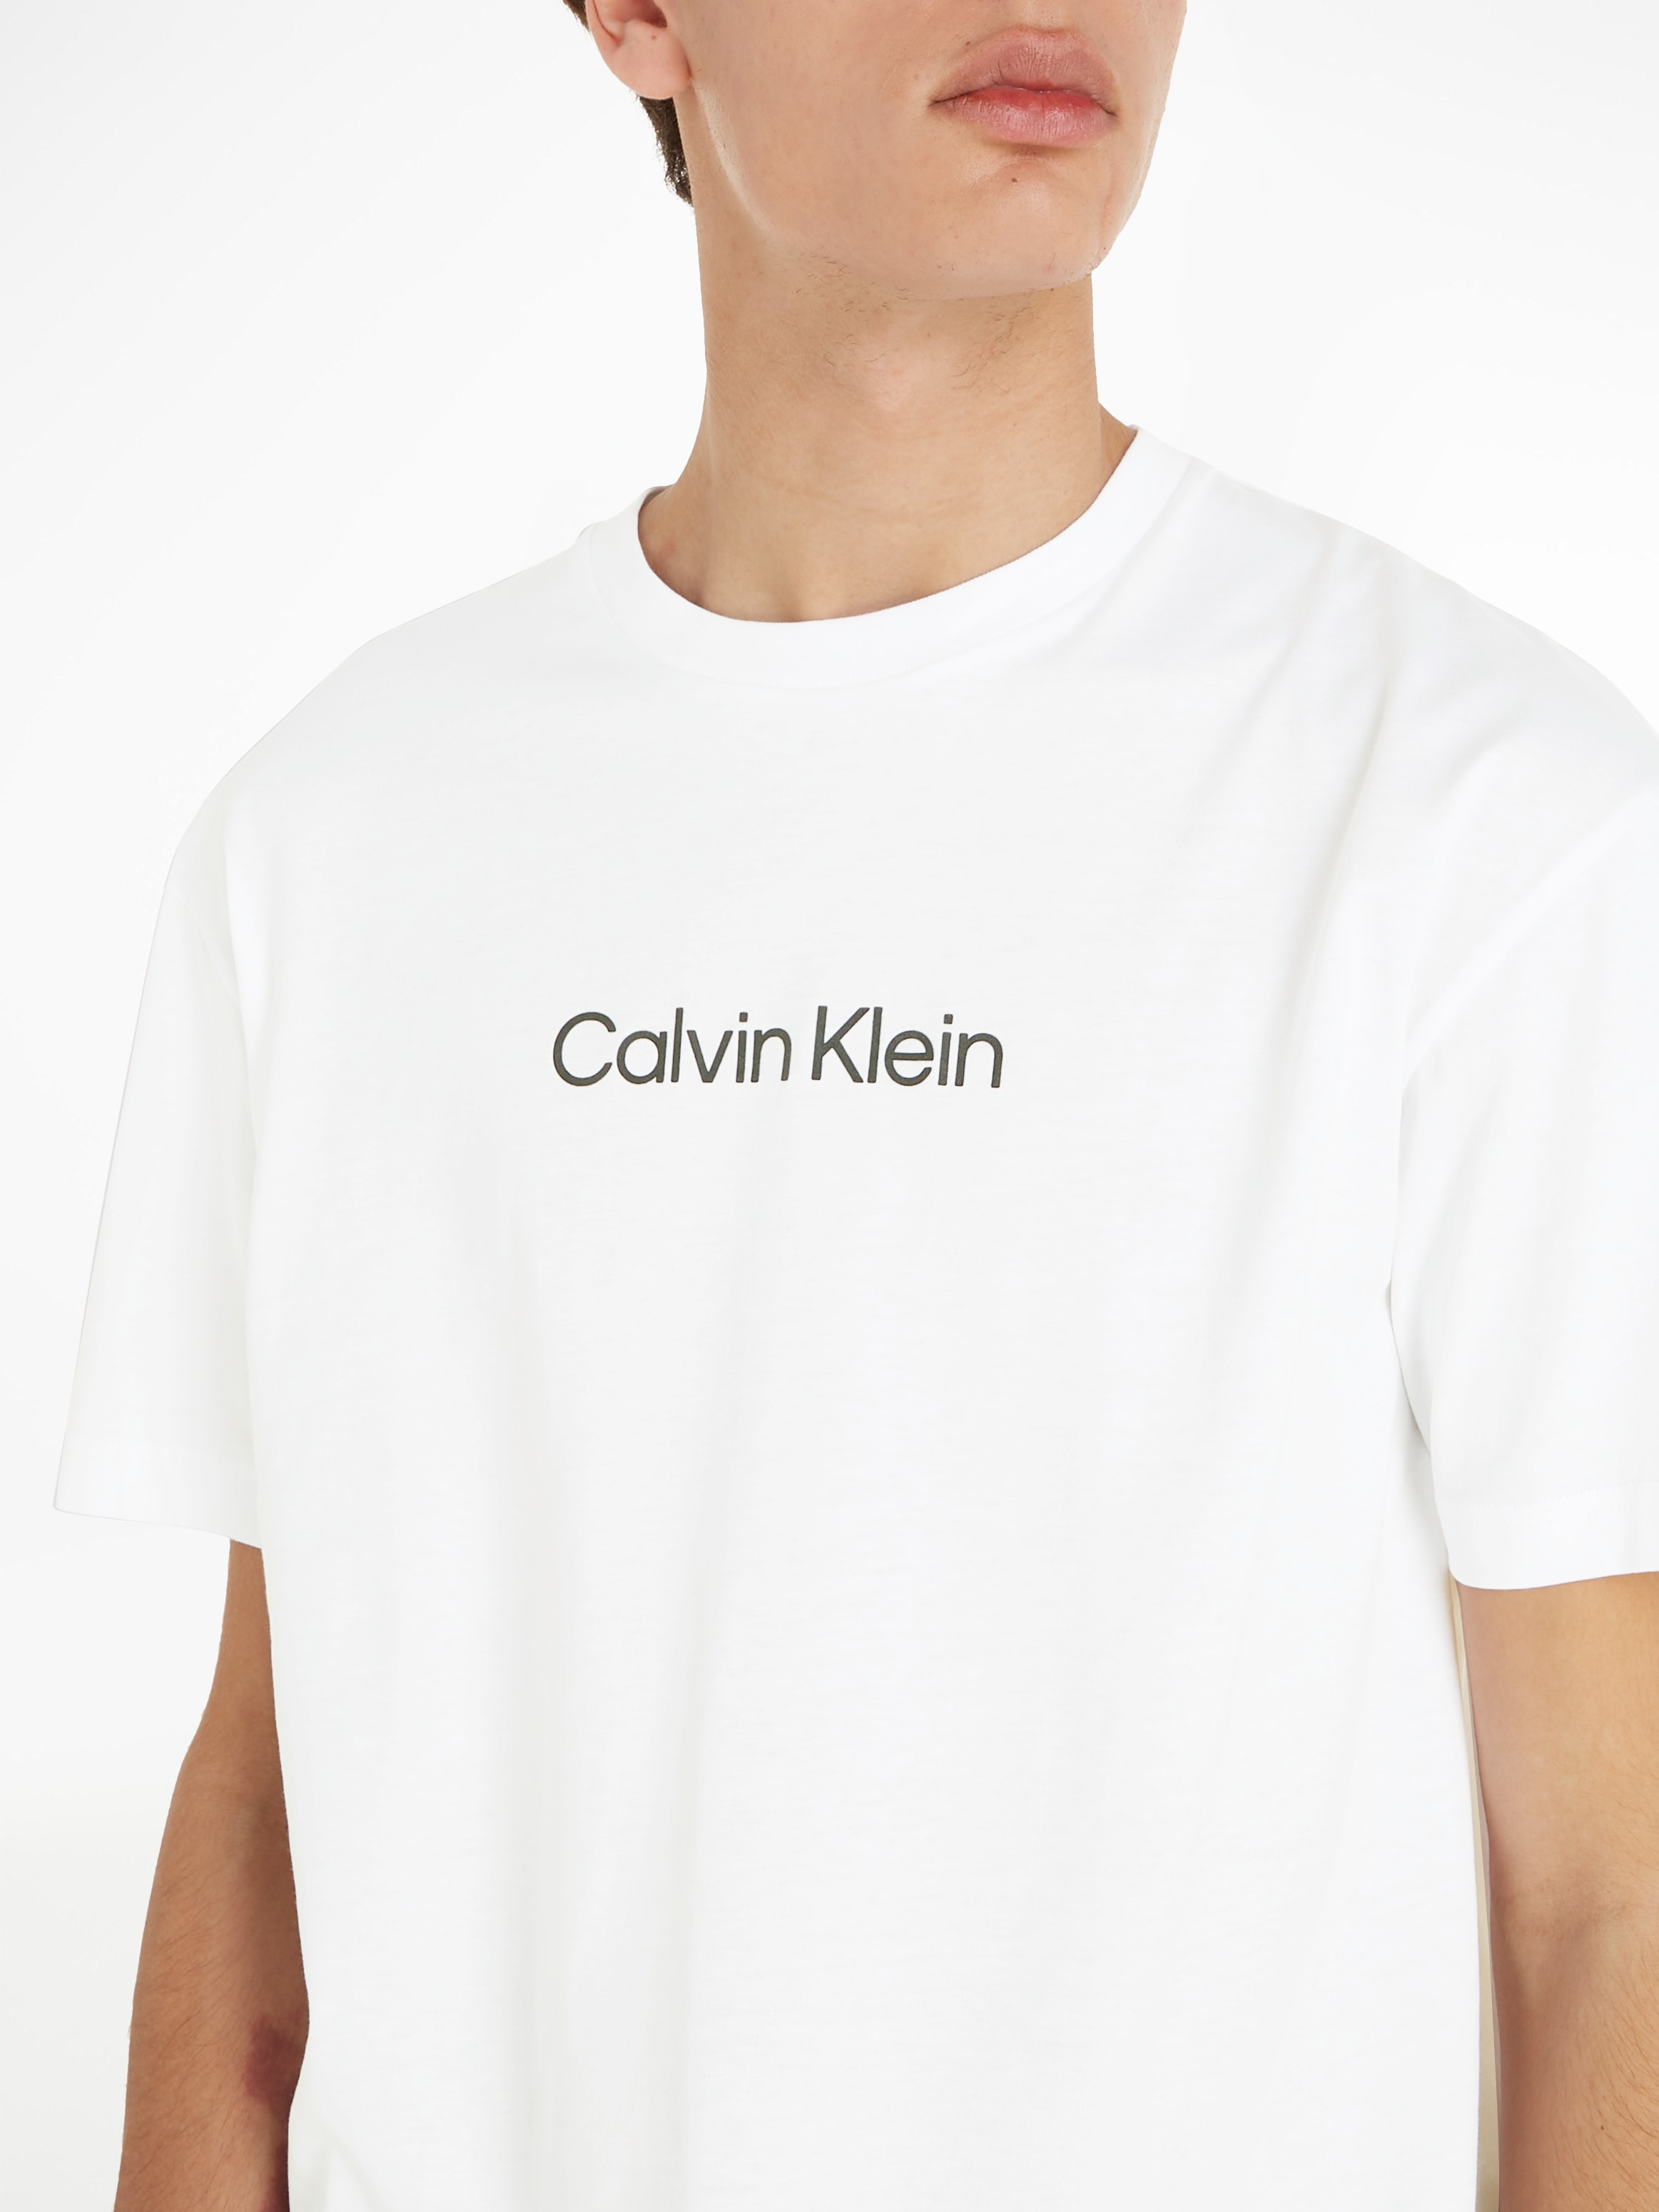 »HERO LOGO ♕ Klein COMFORT mit Markenlabel bei T-Shirt Calvin aufgedrucktem T-SHIRT«,